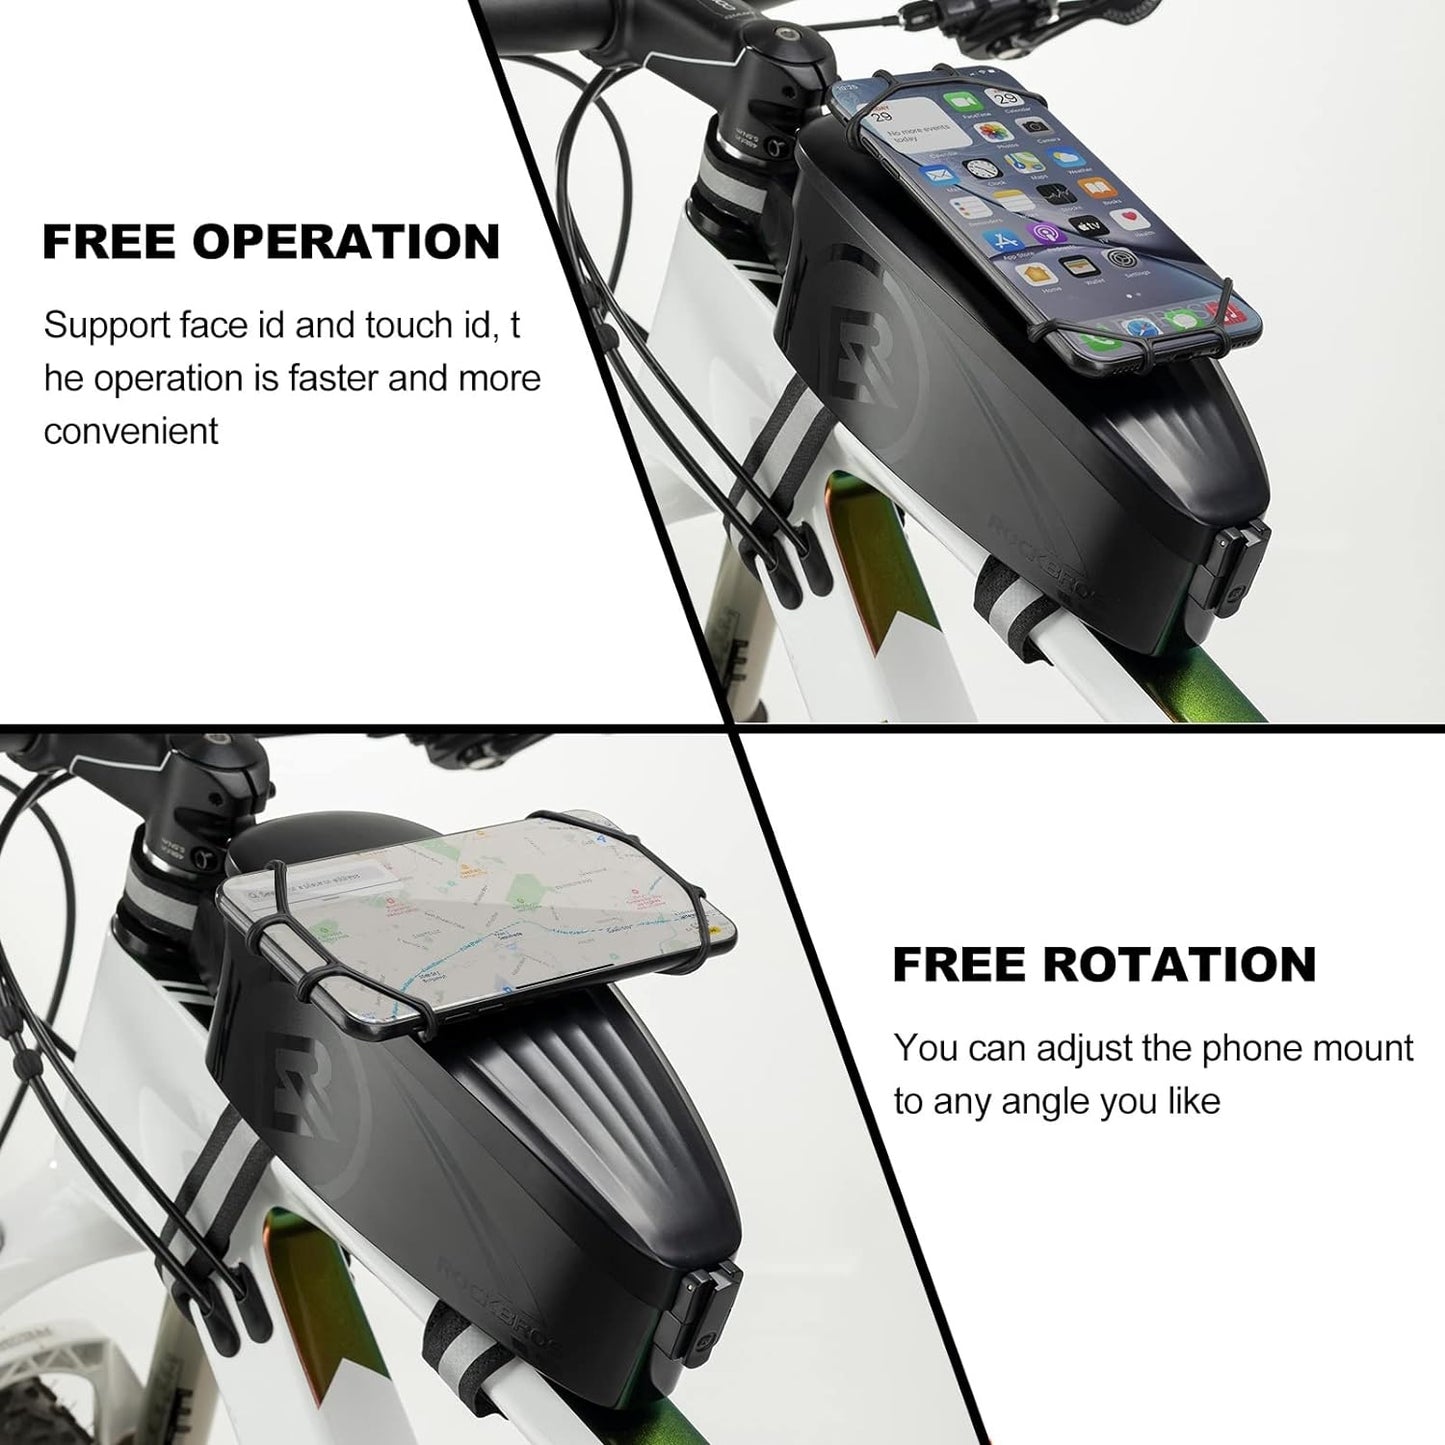 ROCKBROS cykeltaske steltaske med mobiltelefonholder til 4-6,5 tommer mobiltelefon